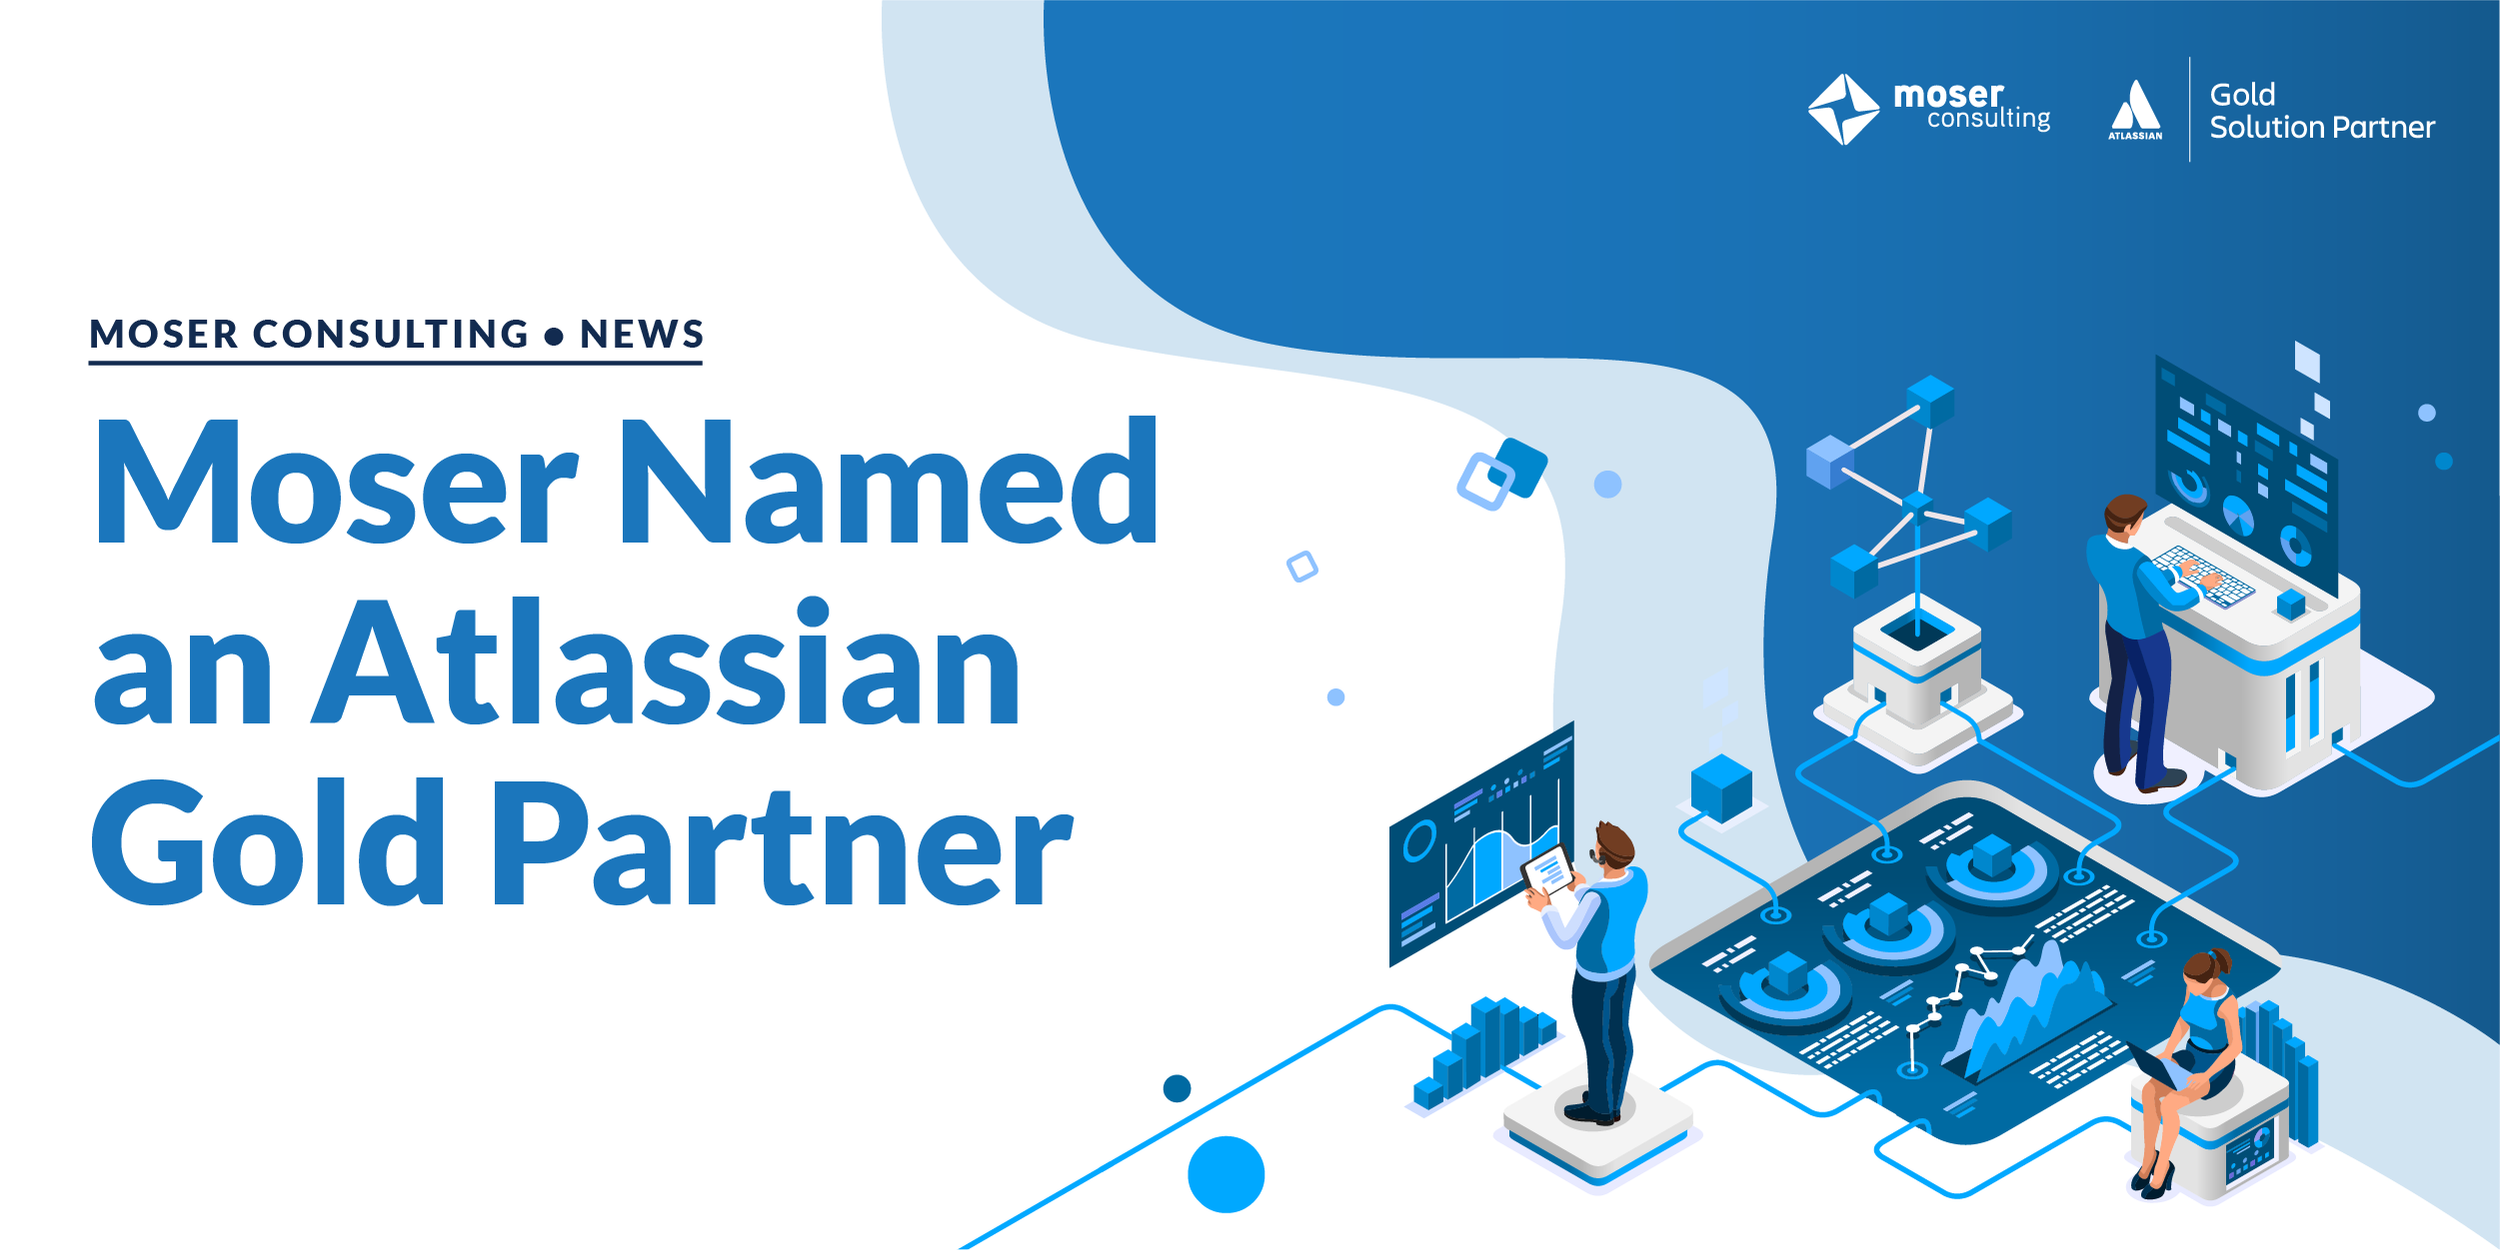 Moser Named an Atlassian Gold Partner